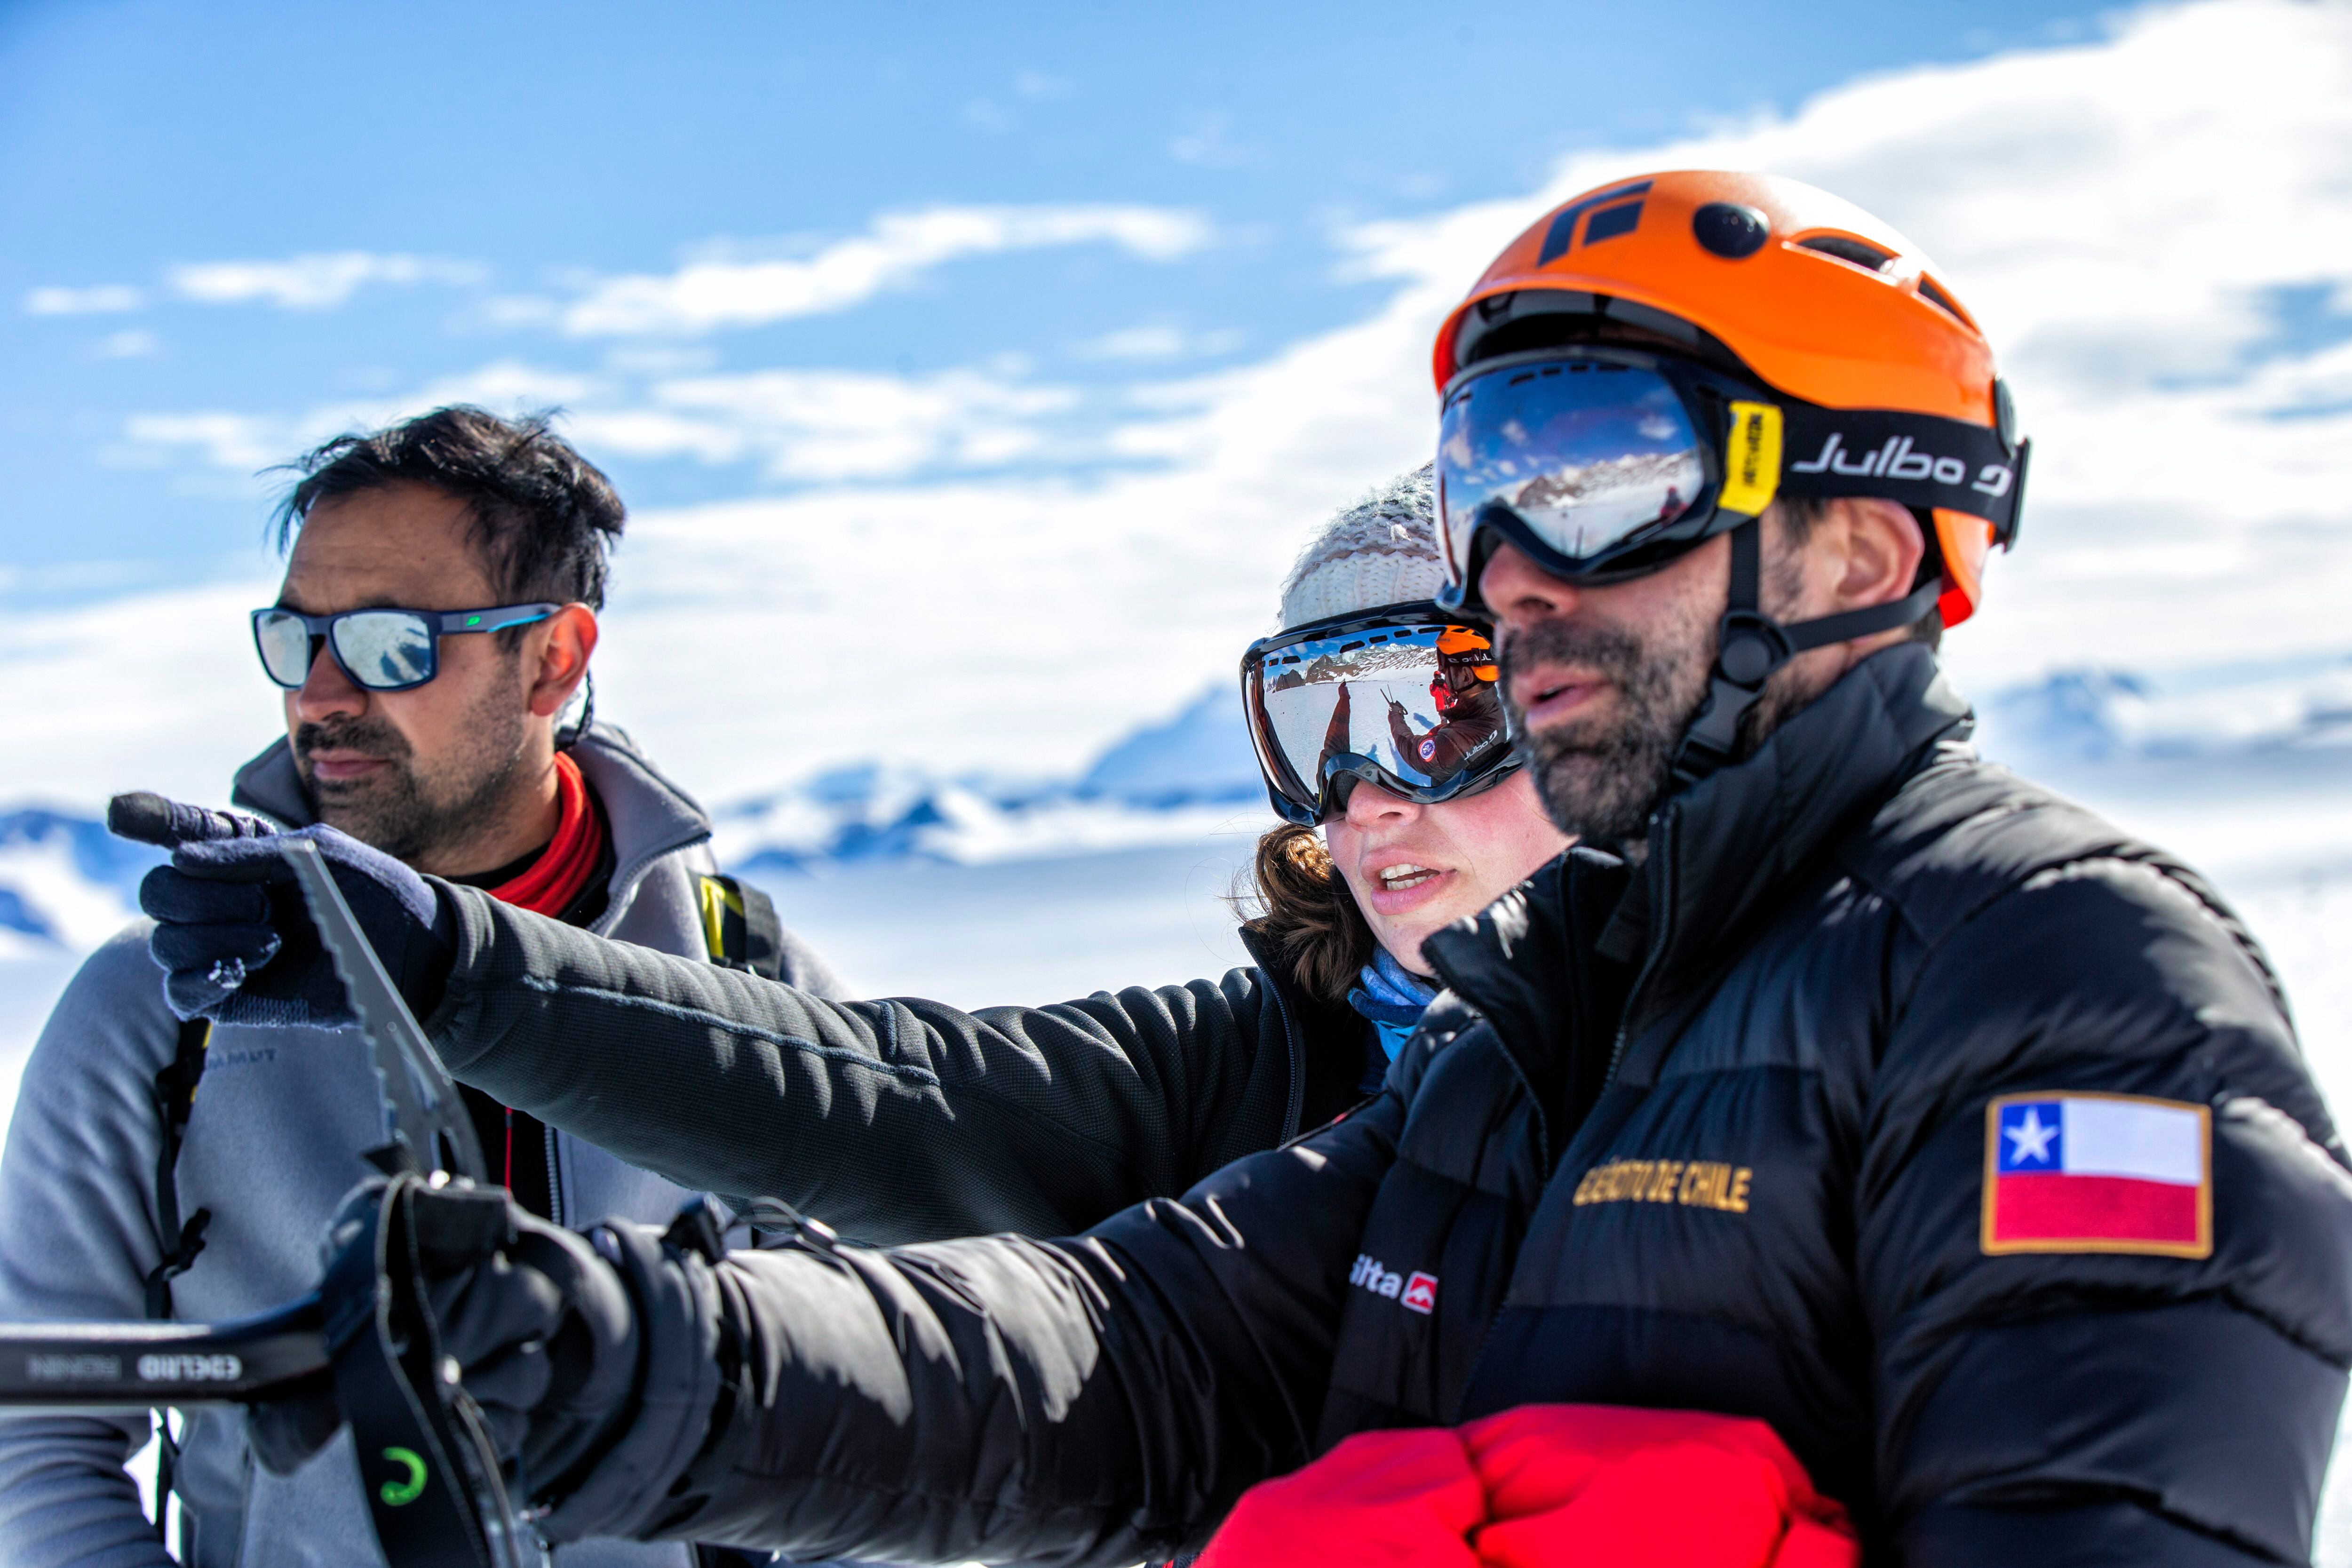 El explorador militar Fernando Inostroza, la glacióloga Veronica Tollenaar y el ingeniero José Jorquera inspeccionan una zona de hielo azul.